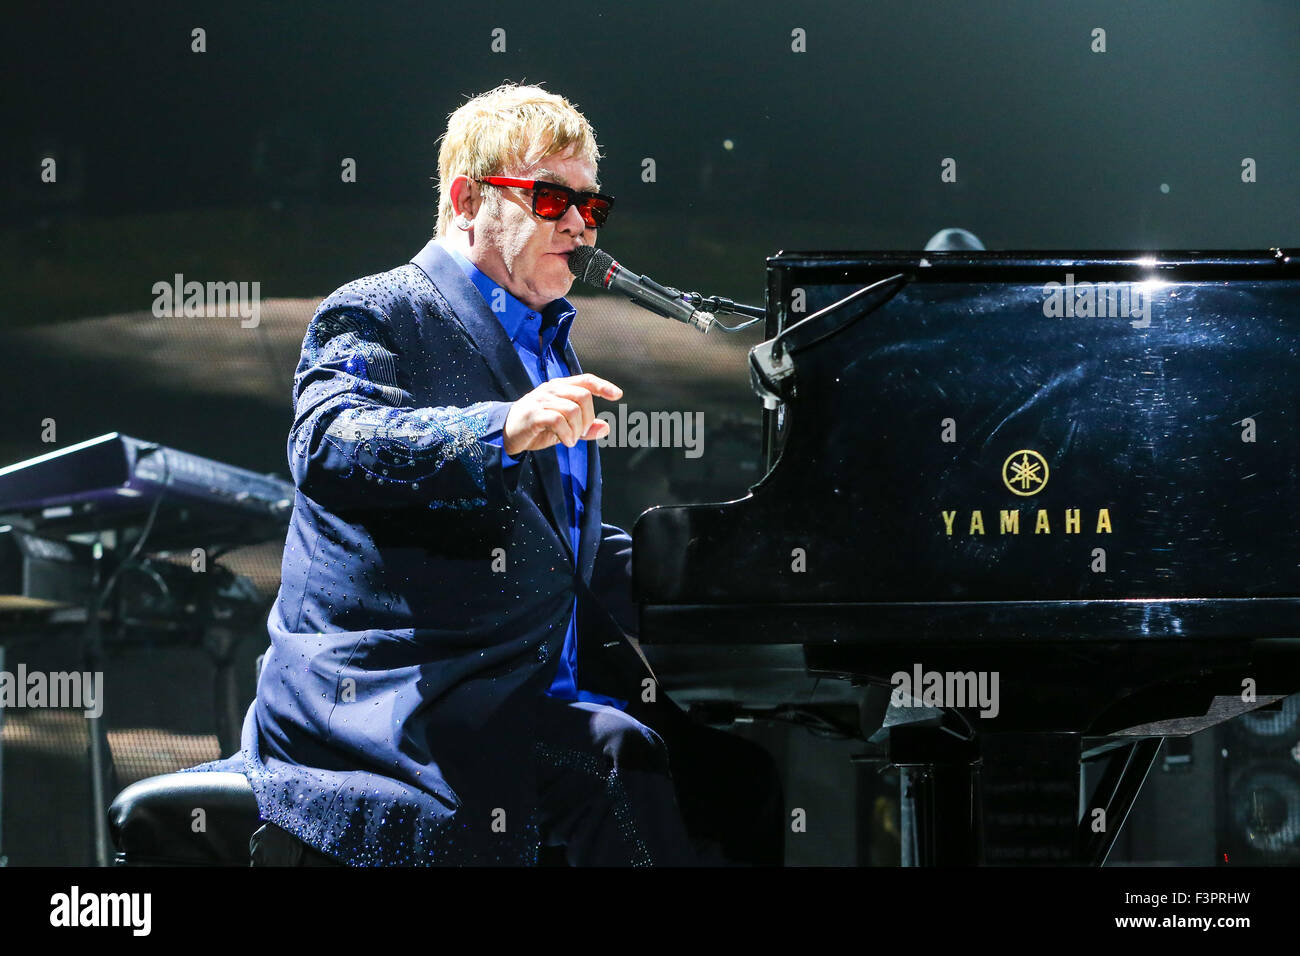 Musique Artiste Sir Elton John joue sur sa tournée mondiale 2015 Banque D'Images